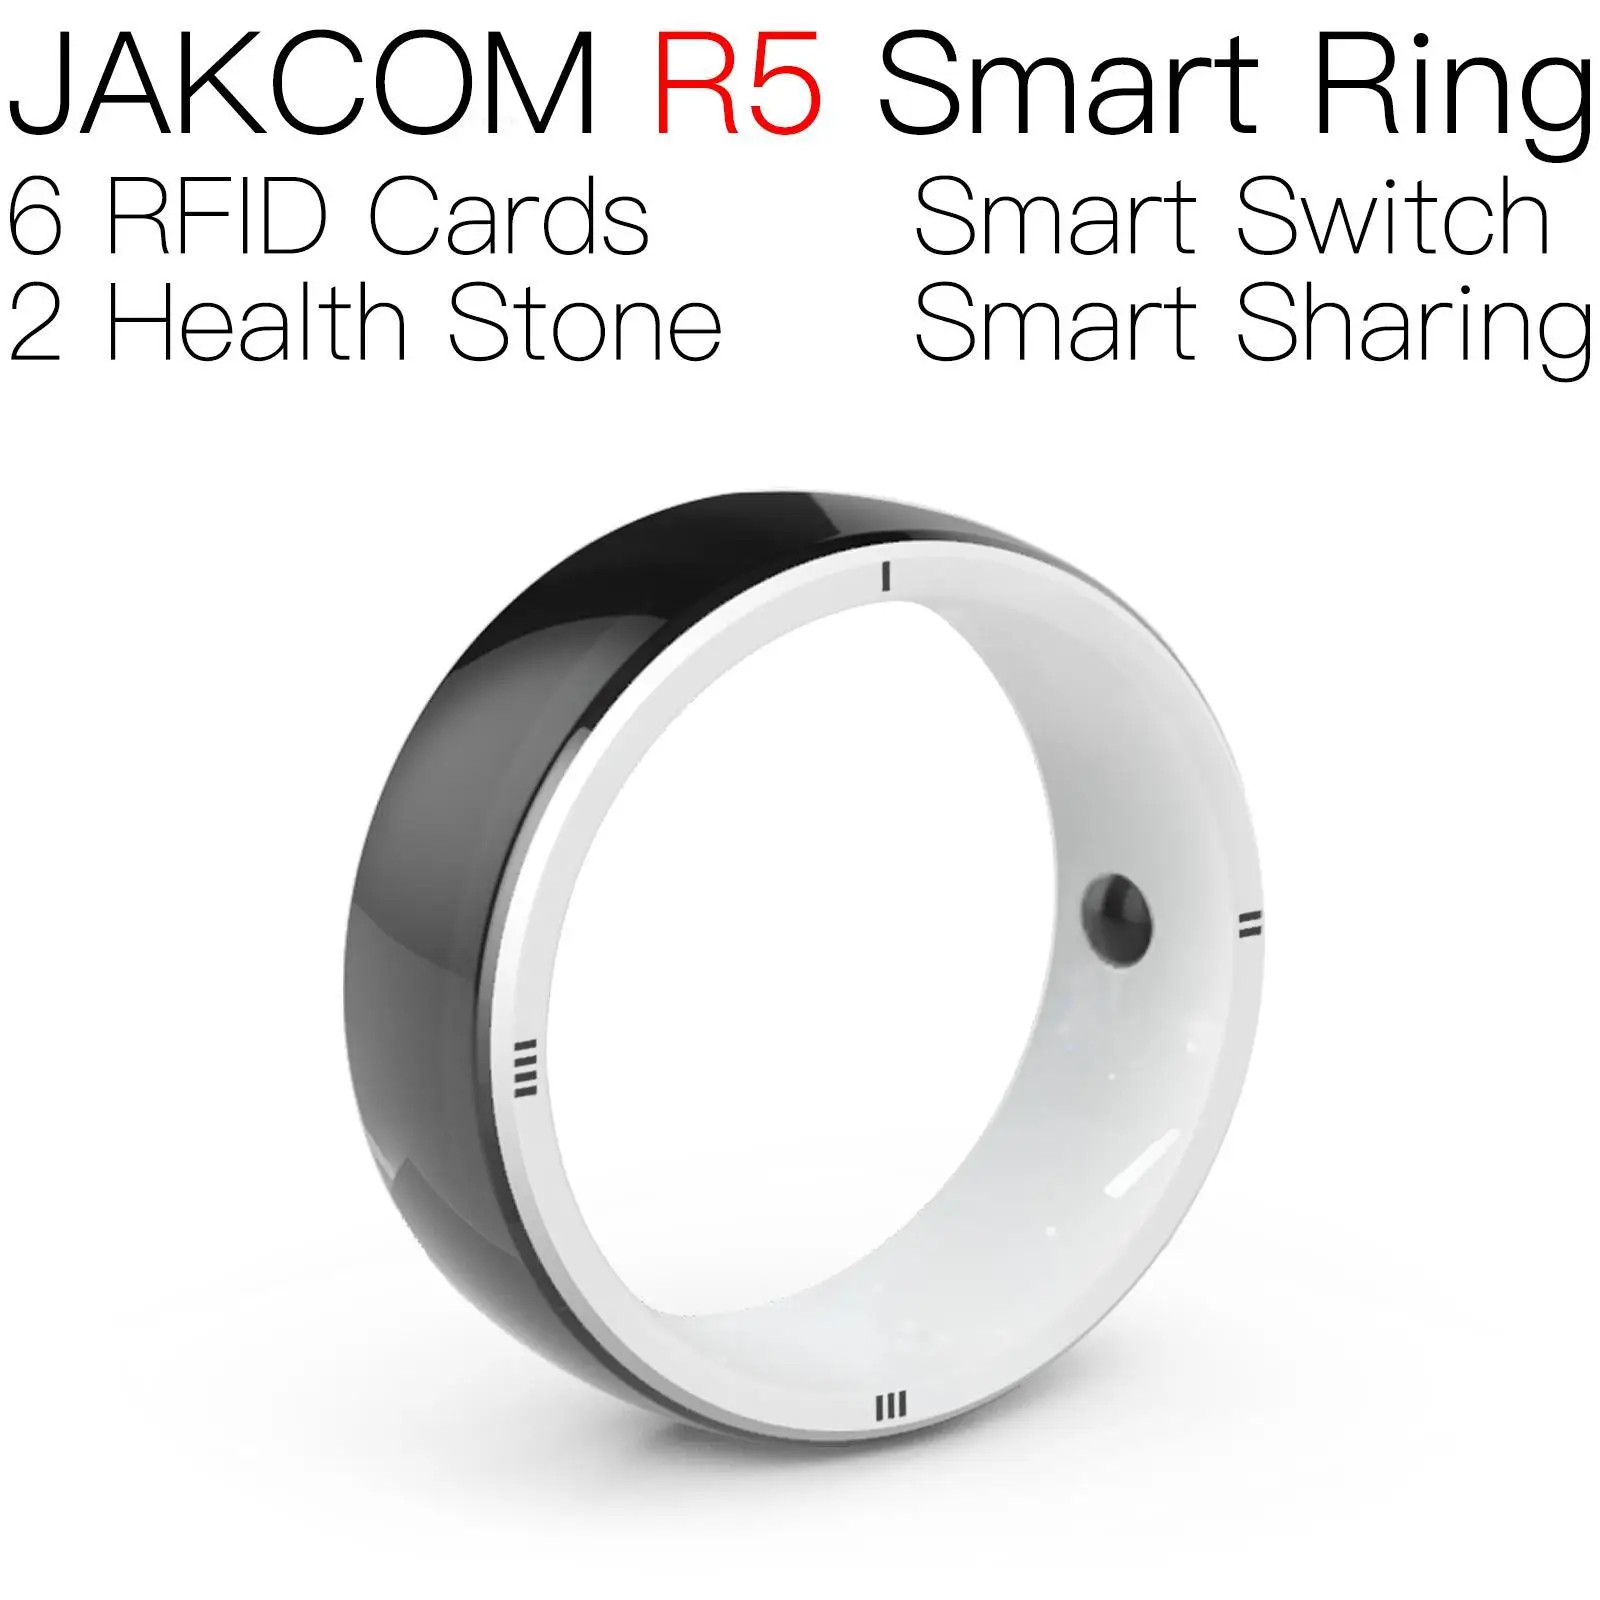 

Умное кольцо JAKCOM R5, новее, чем серия 7 smartband m4 8bitdo ultimate, 6 ремешков, мобильные инструменты